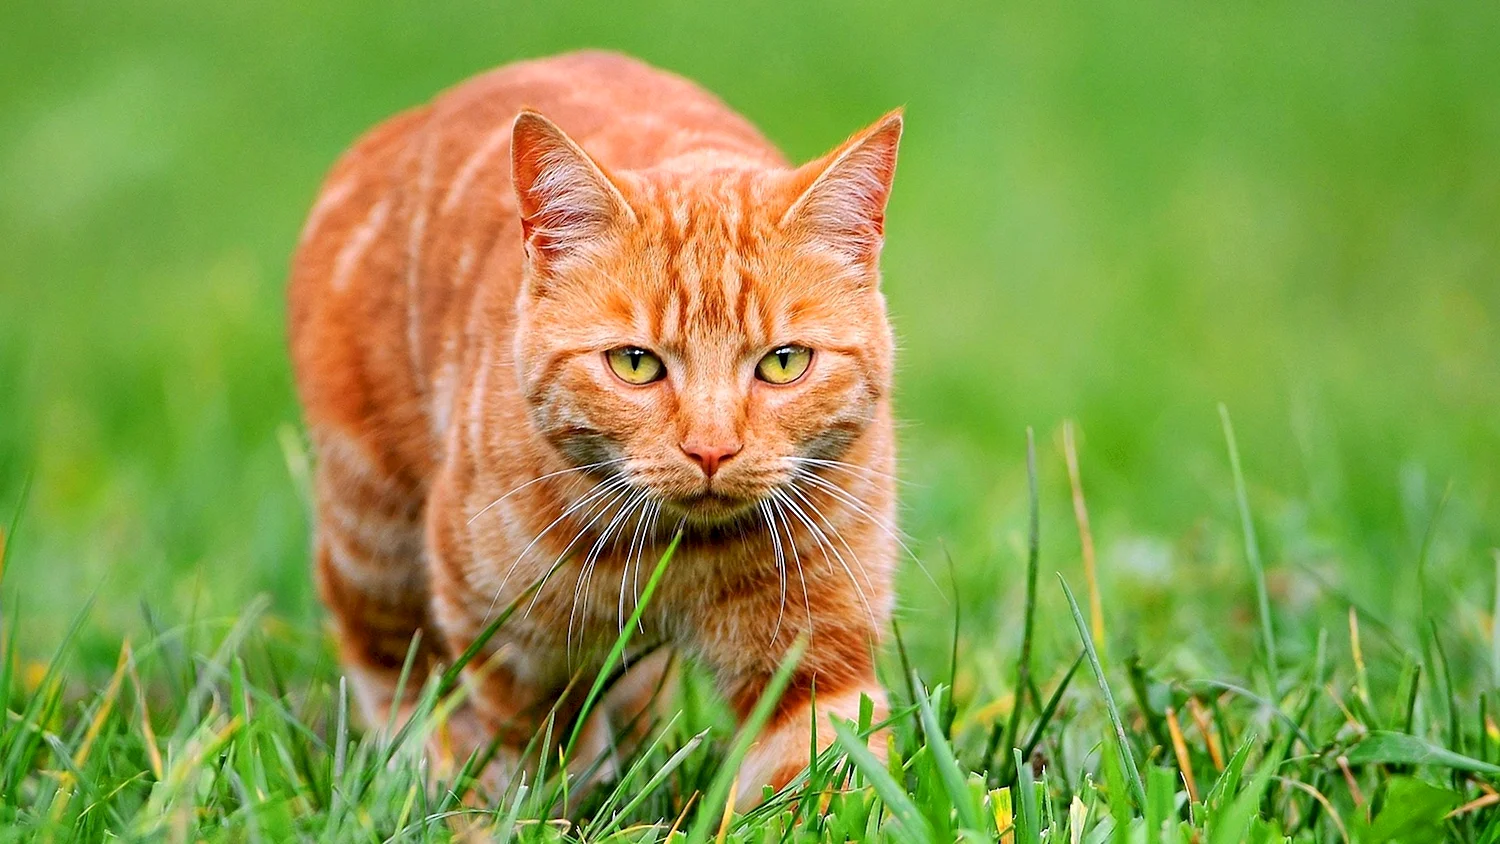 Ginger tabby Cat